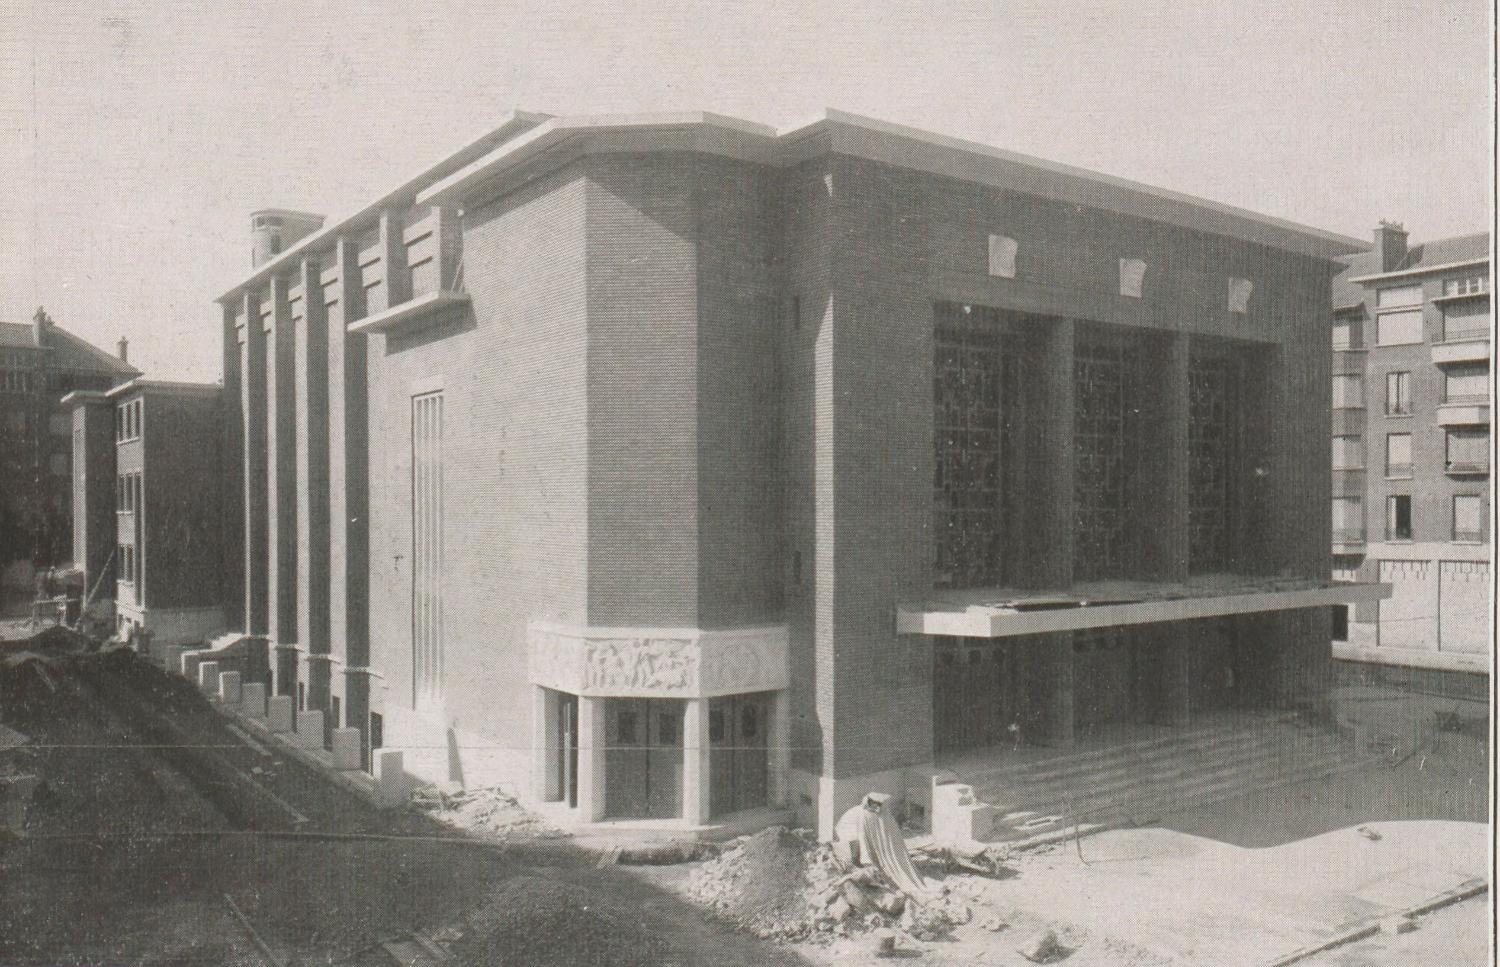 Vue du théâtre en construction. L'âge du ciment, bulletin technique des chaux et ciments de Lafarge et Du Teil ( janvier 1938)